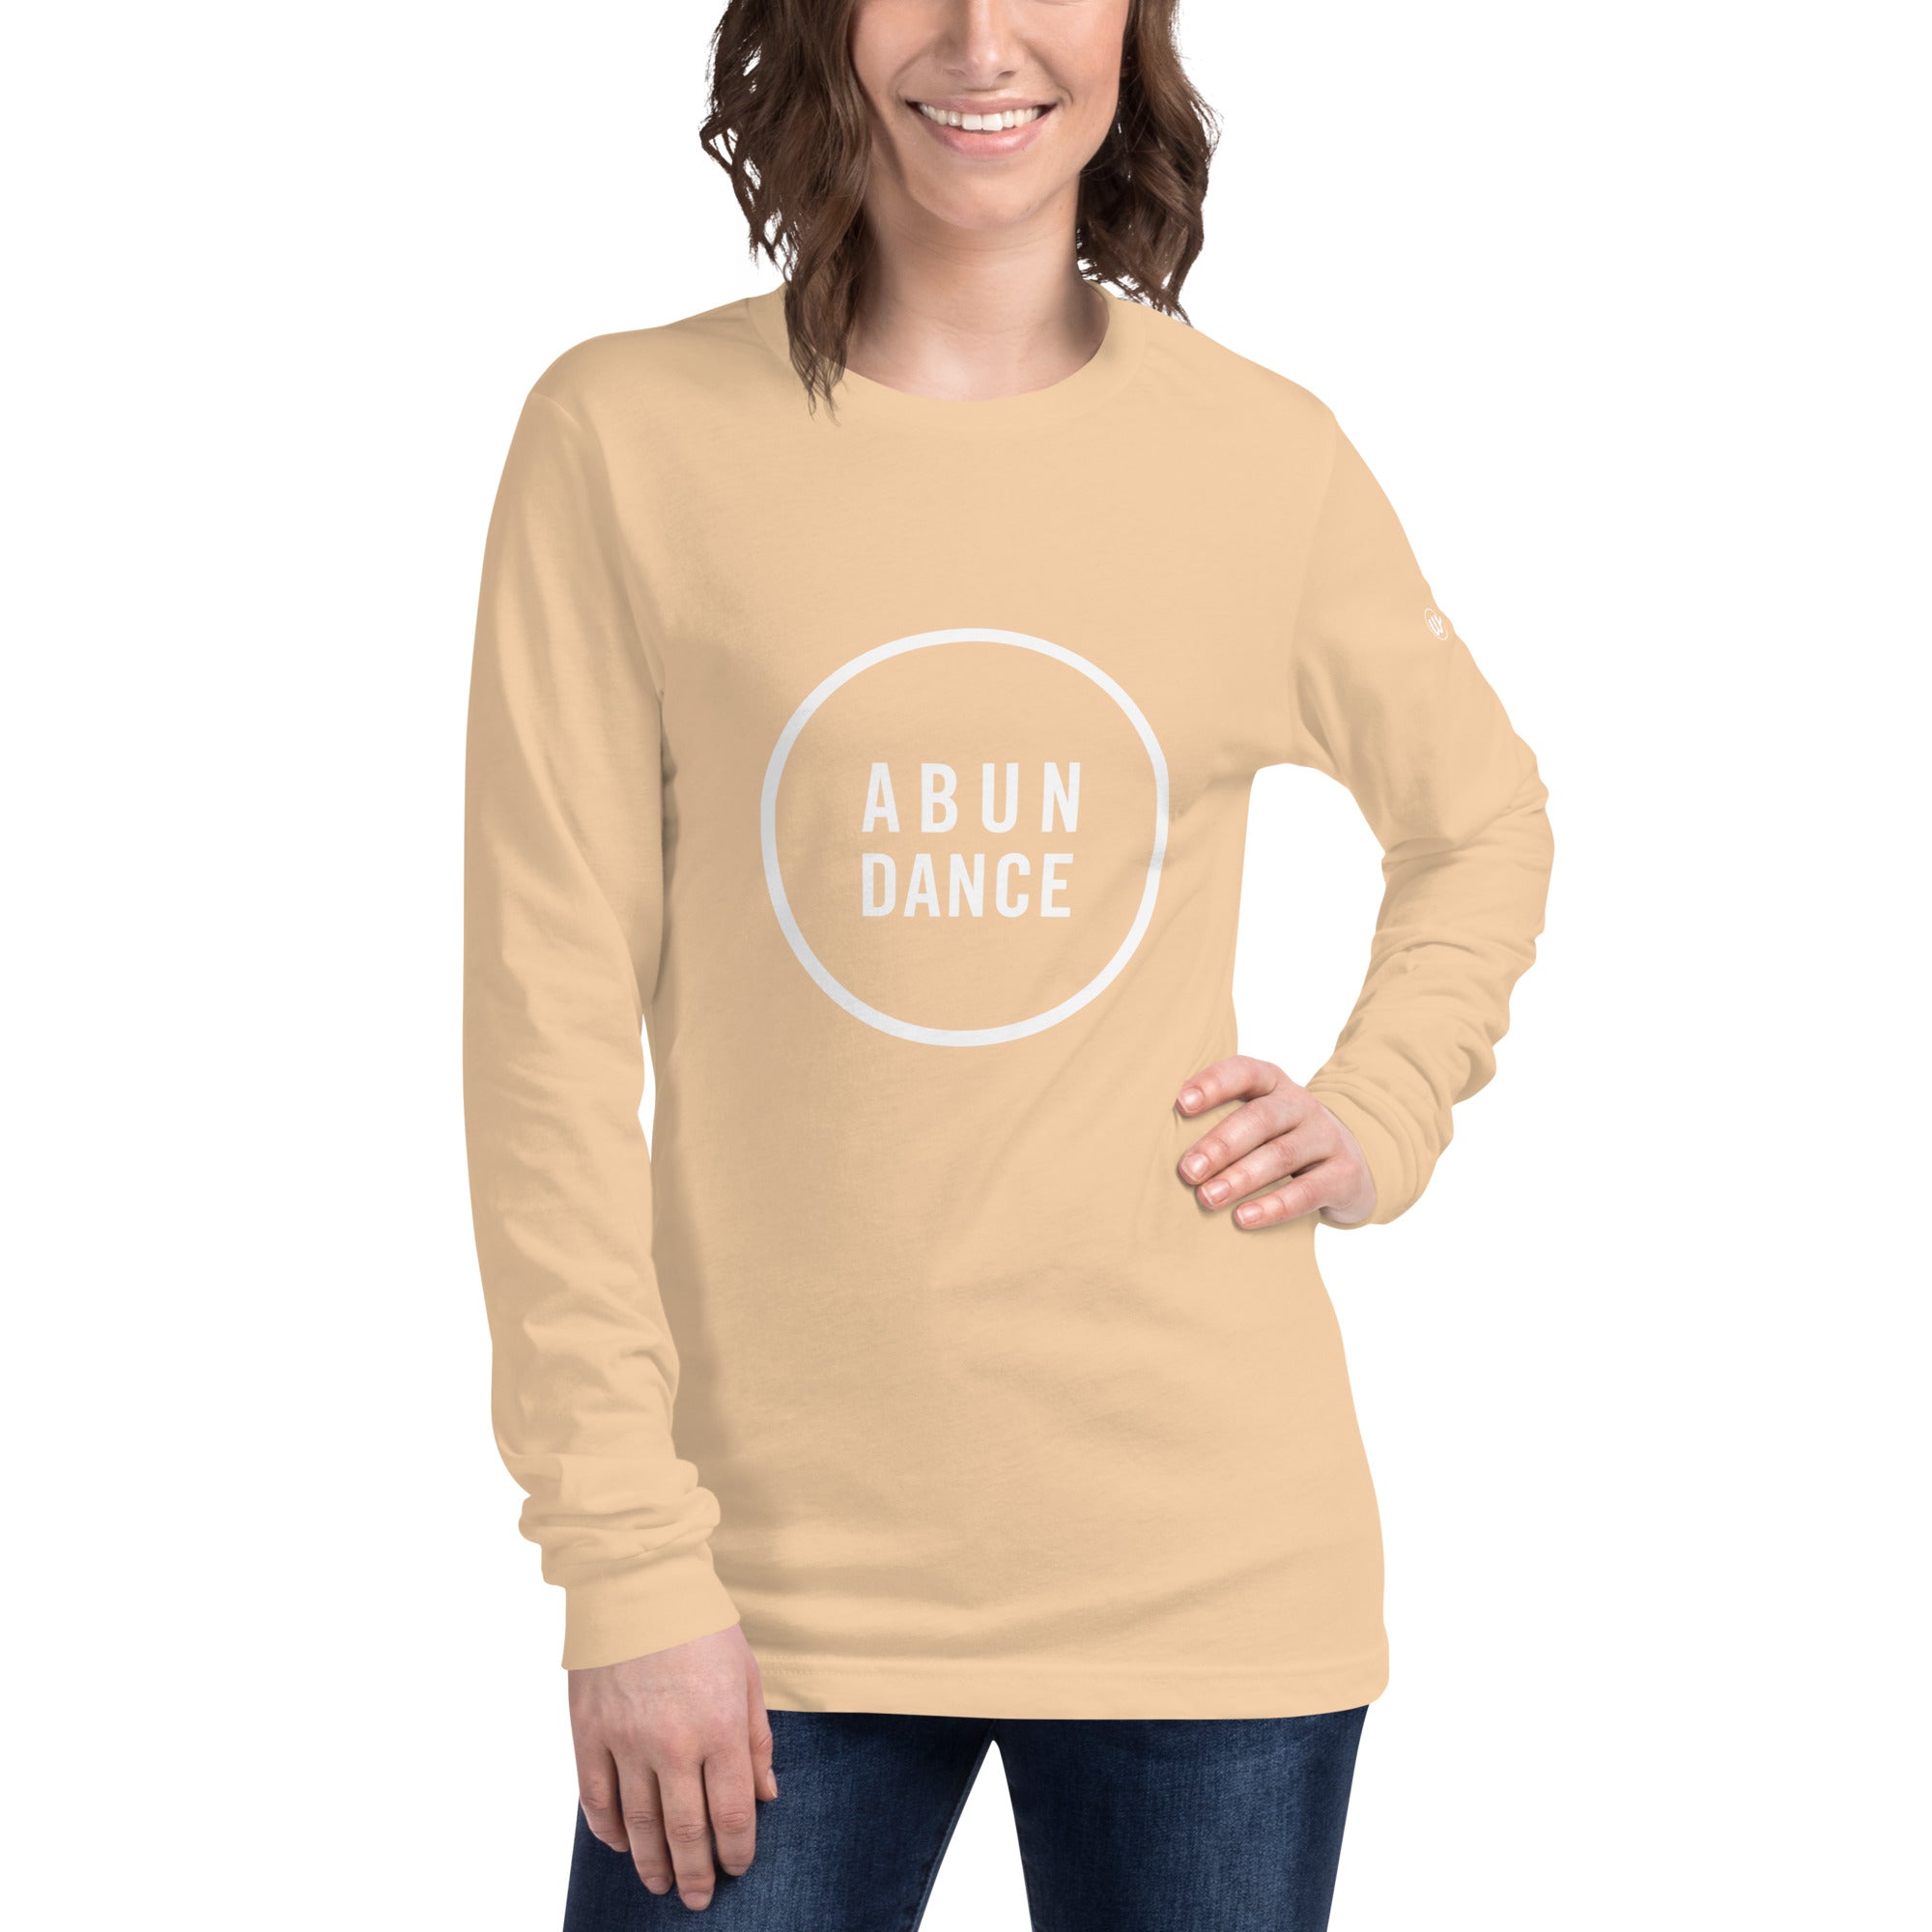 Abun-dance Long Sleeve